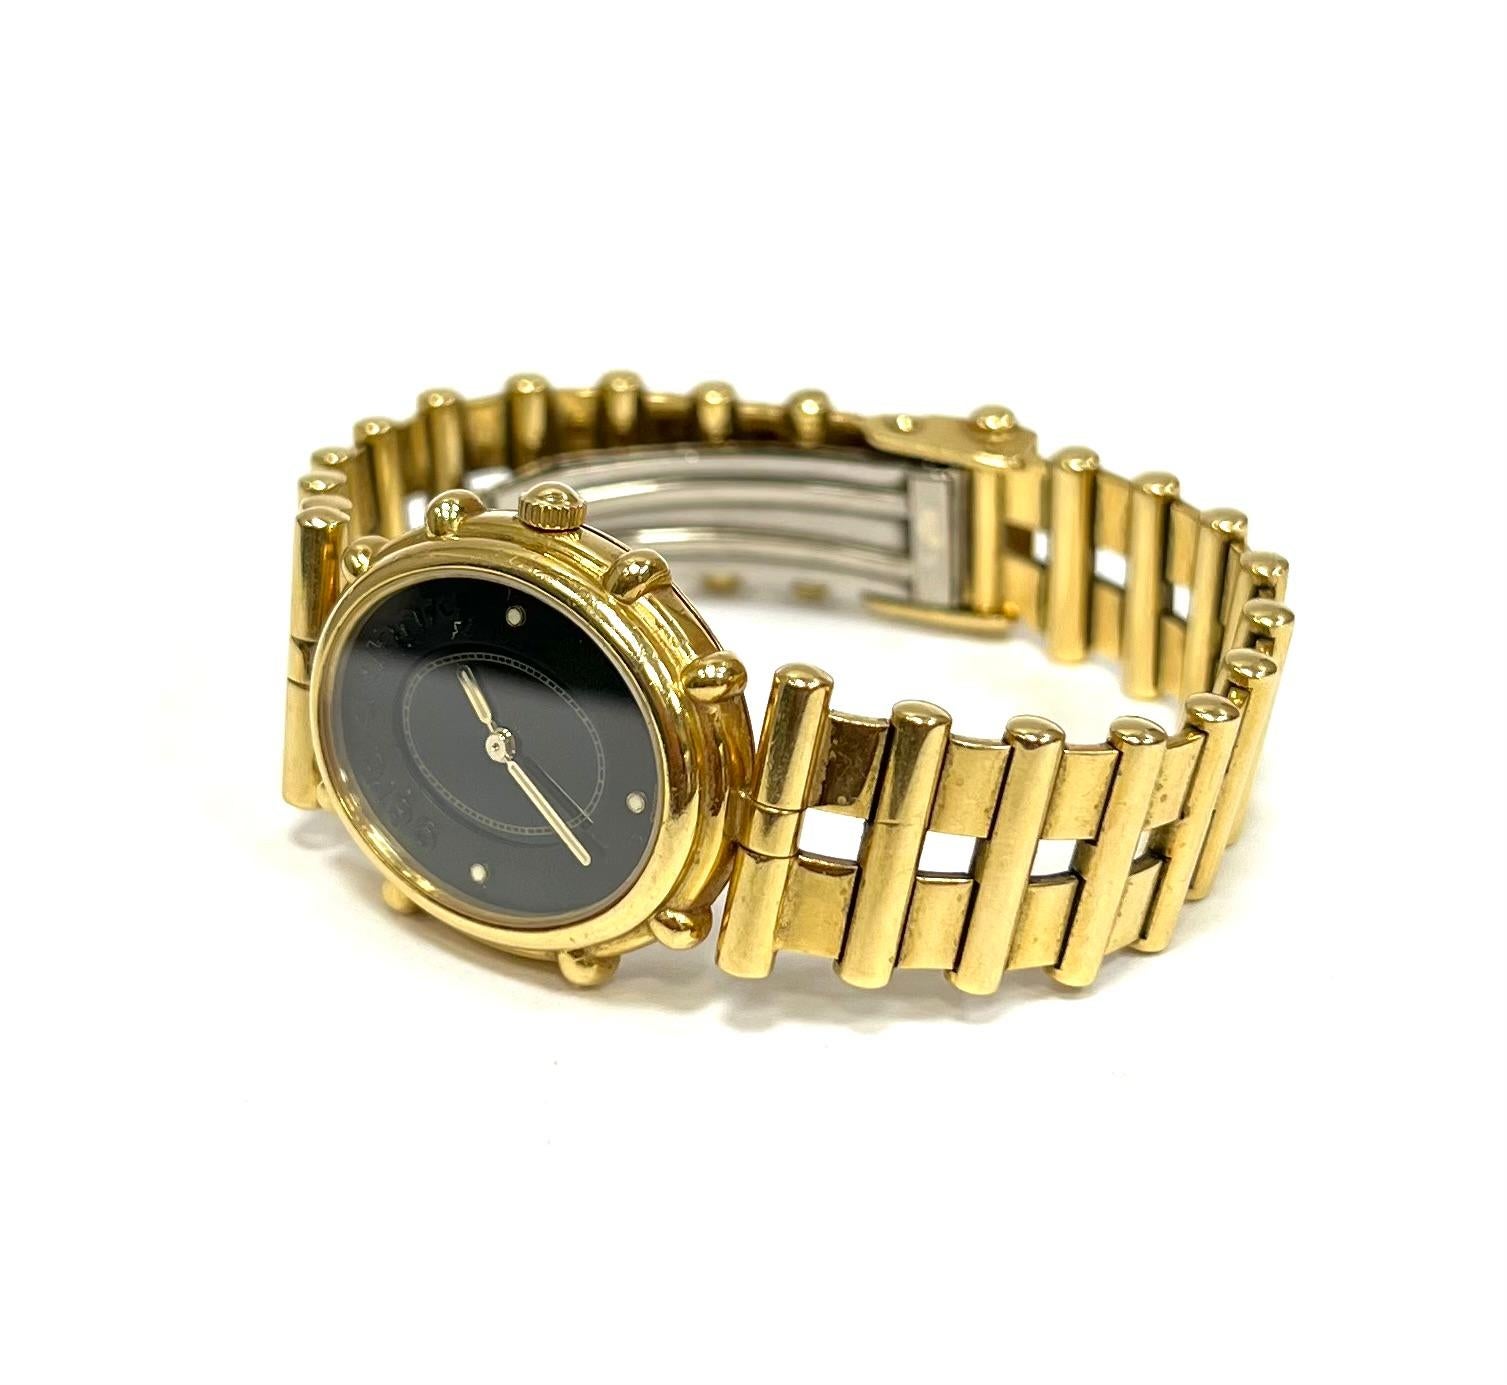  Gérald Genta 18K Yellow Gold Ladies Watch On Gold Bracelet.
Black Dial, Swiss Quartz Movement.
Excellent Condition.